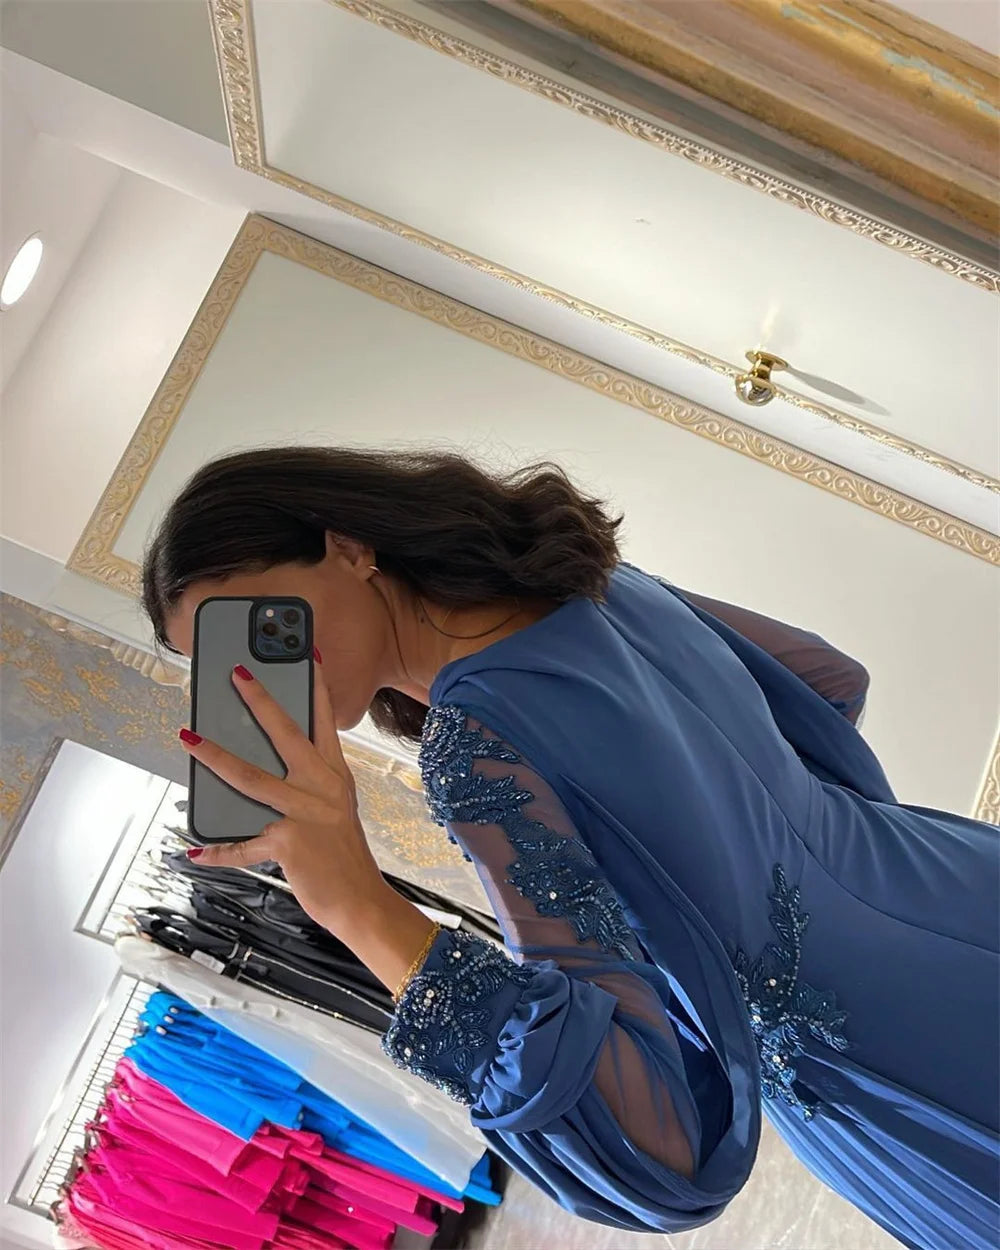 Vestido de fiesta de sirena Sexy, vestido de noche de gasa de seda con manga abullonada, vestido de fiesta Formal azul árabe para mujer